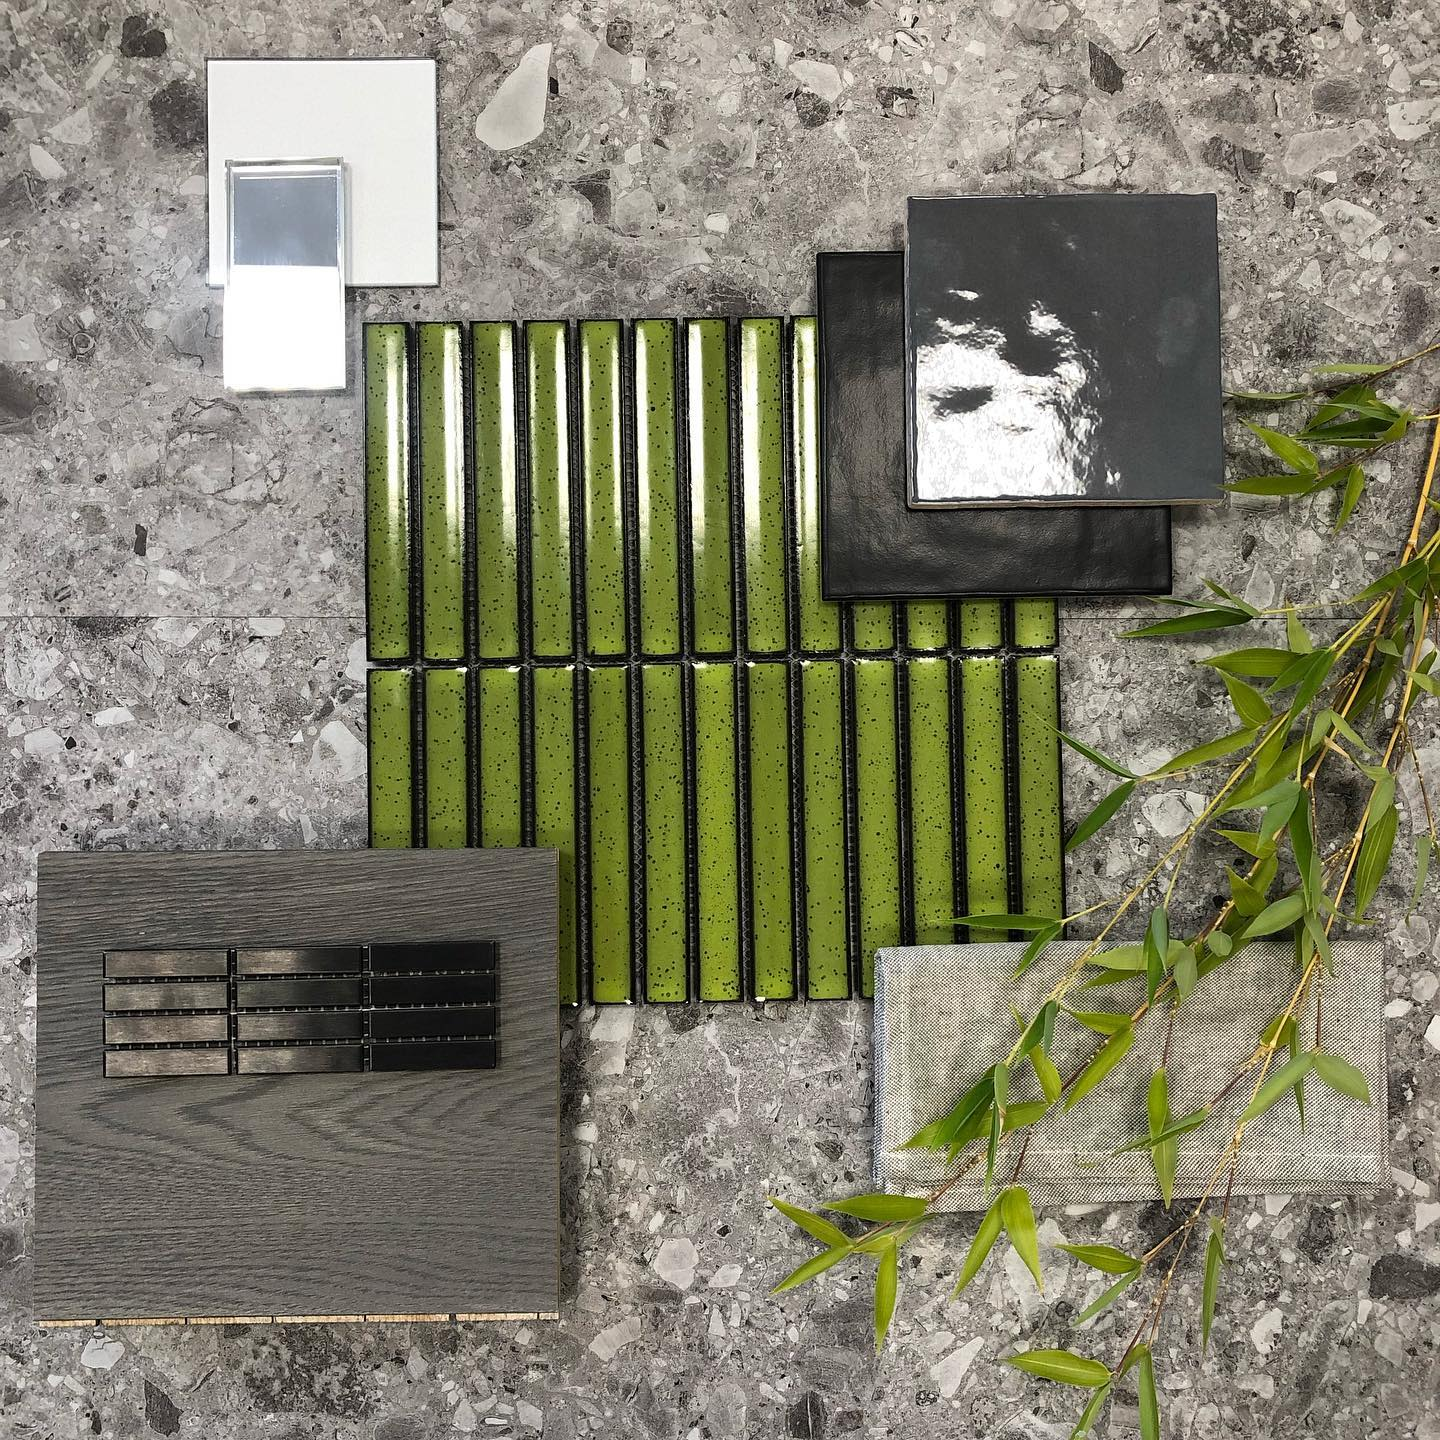 Carrelage uni vert, noir et gris, échantillons et nuances variées sur fond texturé avec feuillage vert